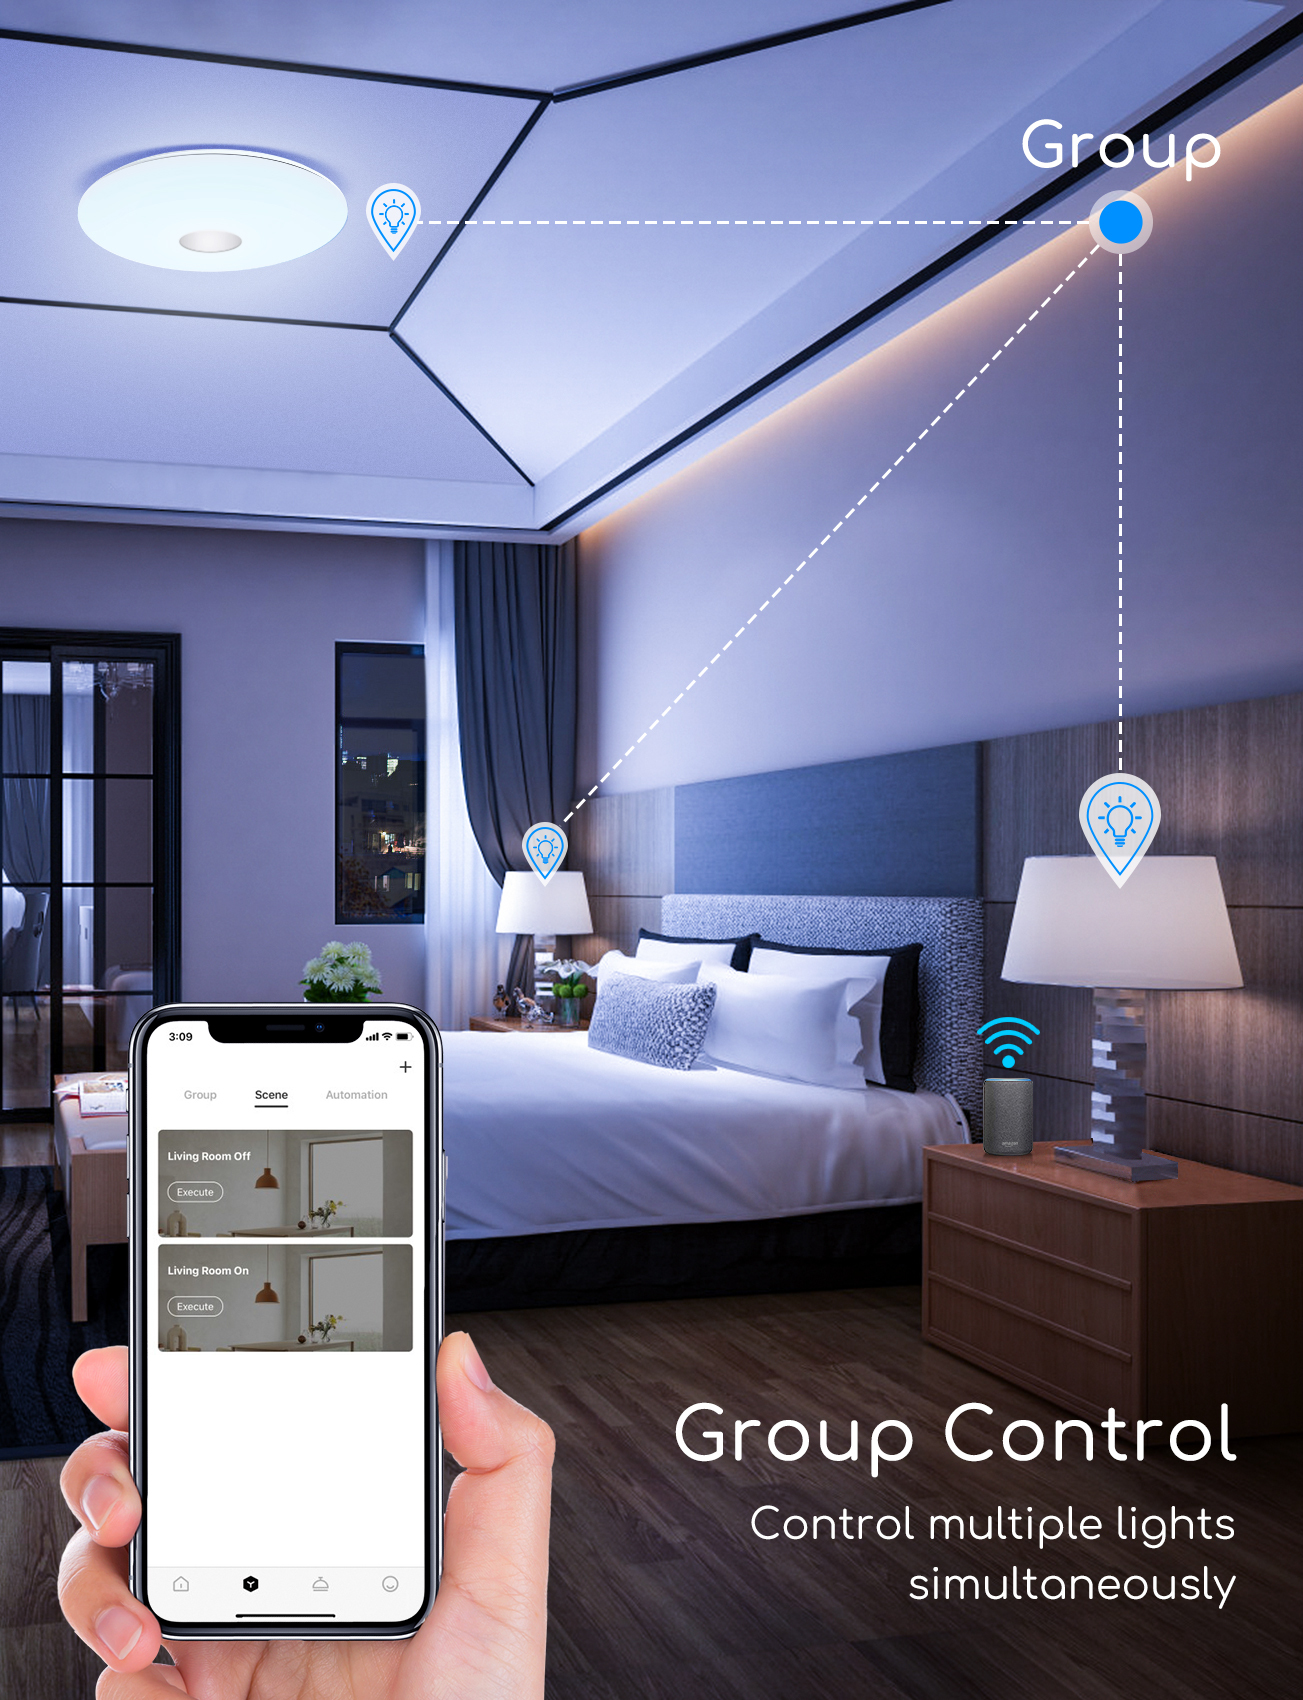 Aigostar Plafoniera LED Dimmerabile WiFi 18W(equivalente 75W) Lampada da Soffitto Controllo da App e Voce, compatibile con Alexa e Google Home, 1300lm, Plafoniere Dimmerabili RGB 3000K-6500K